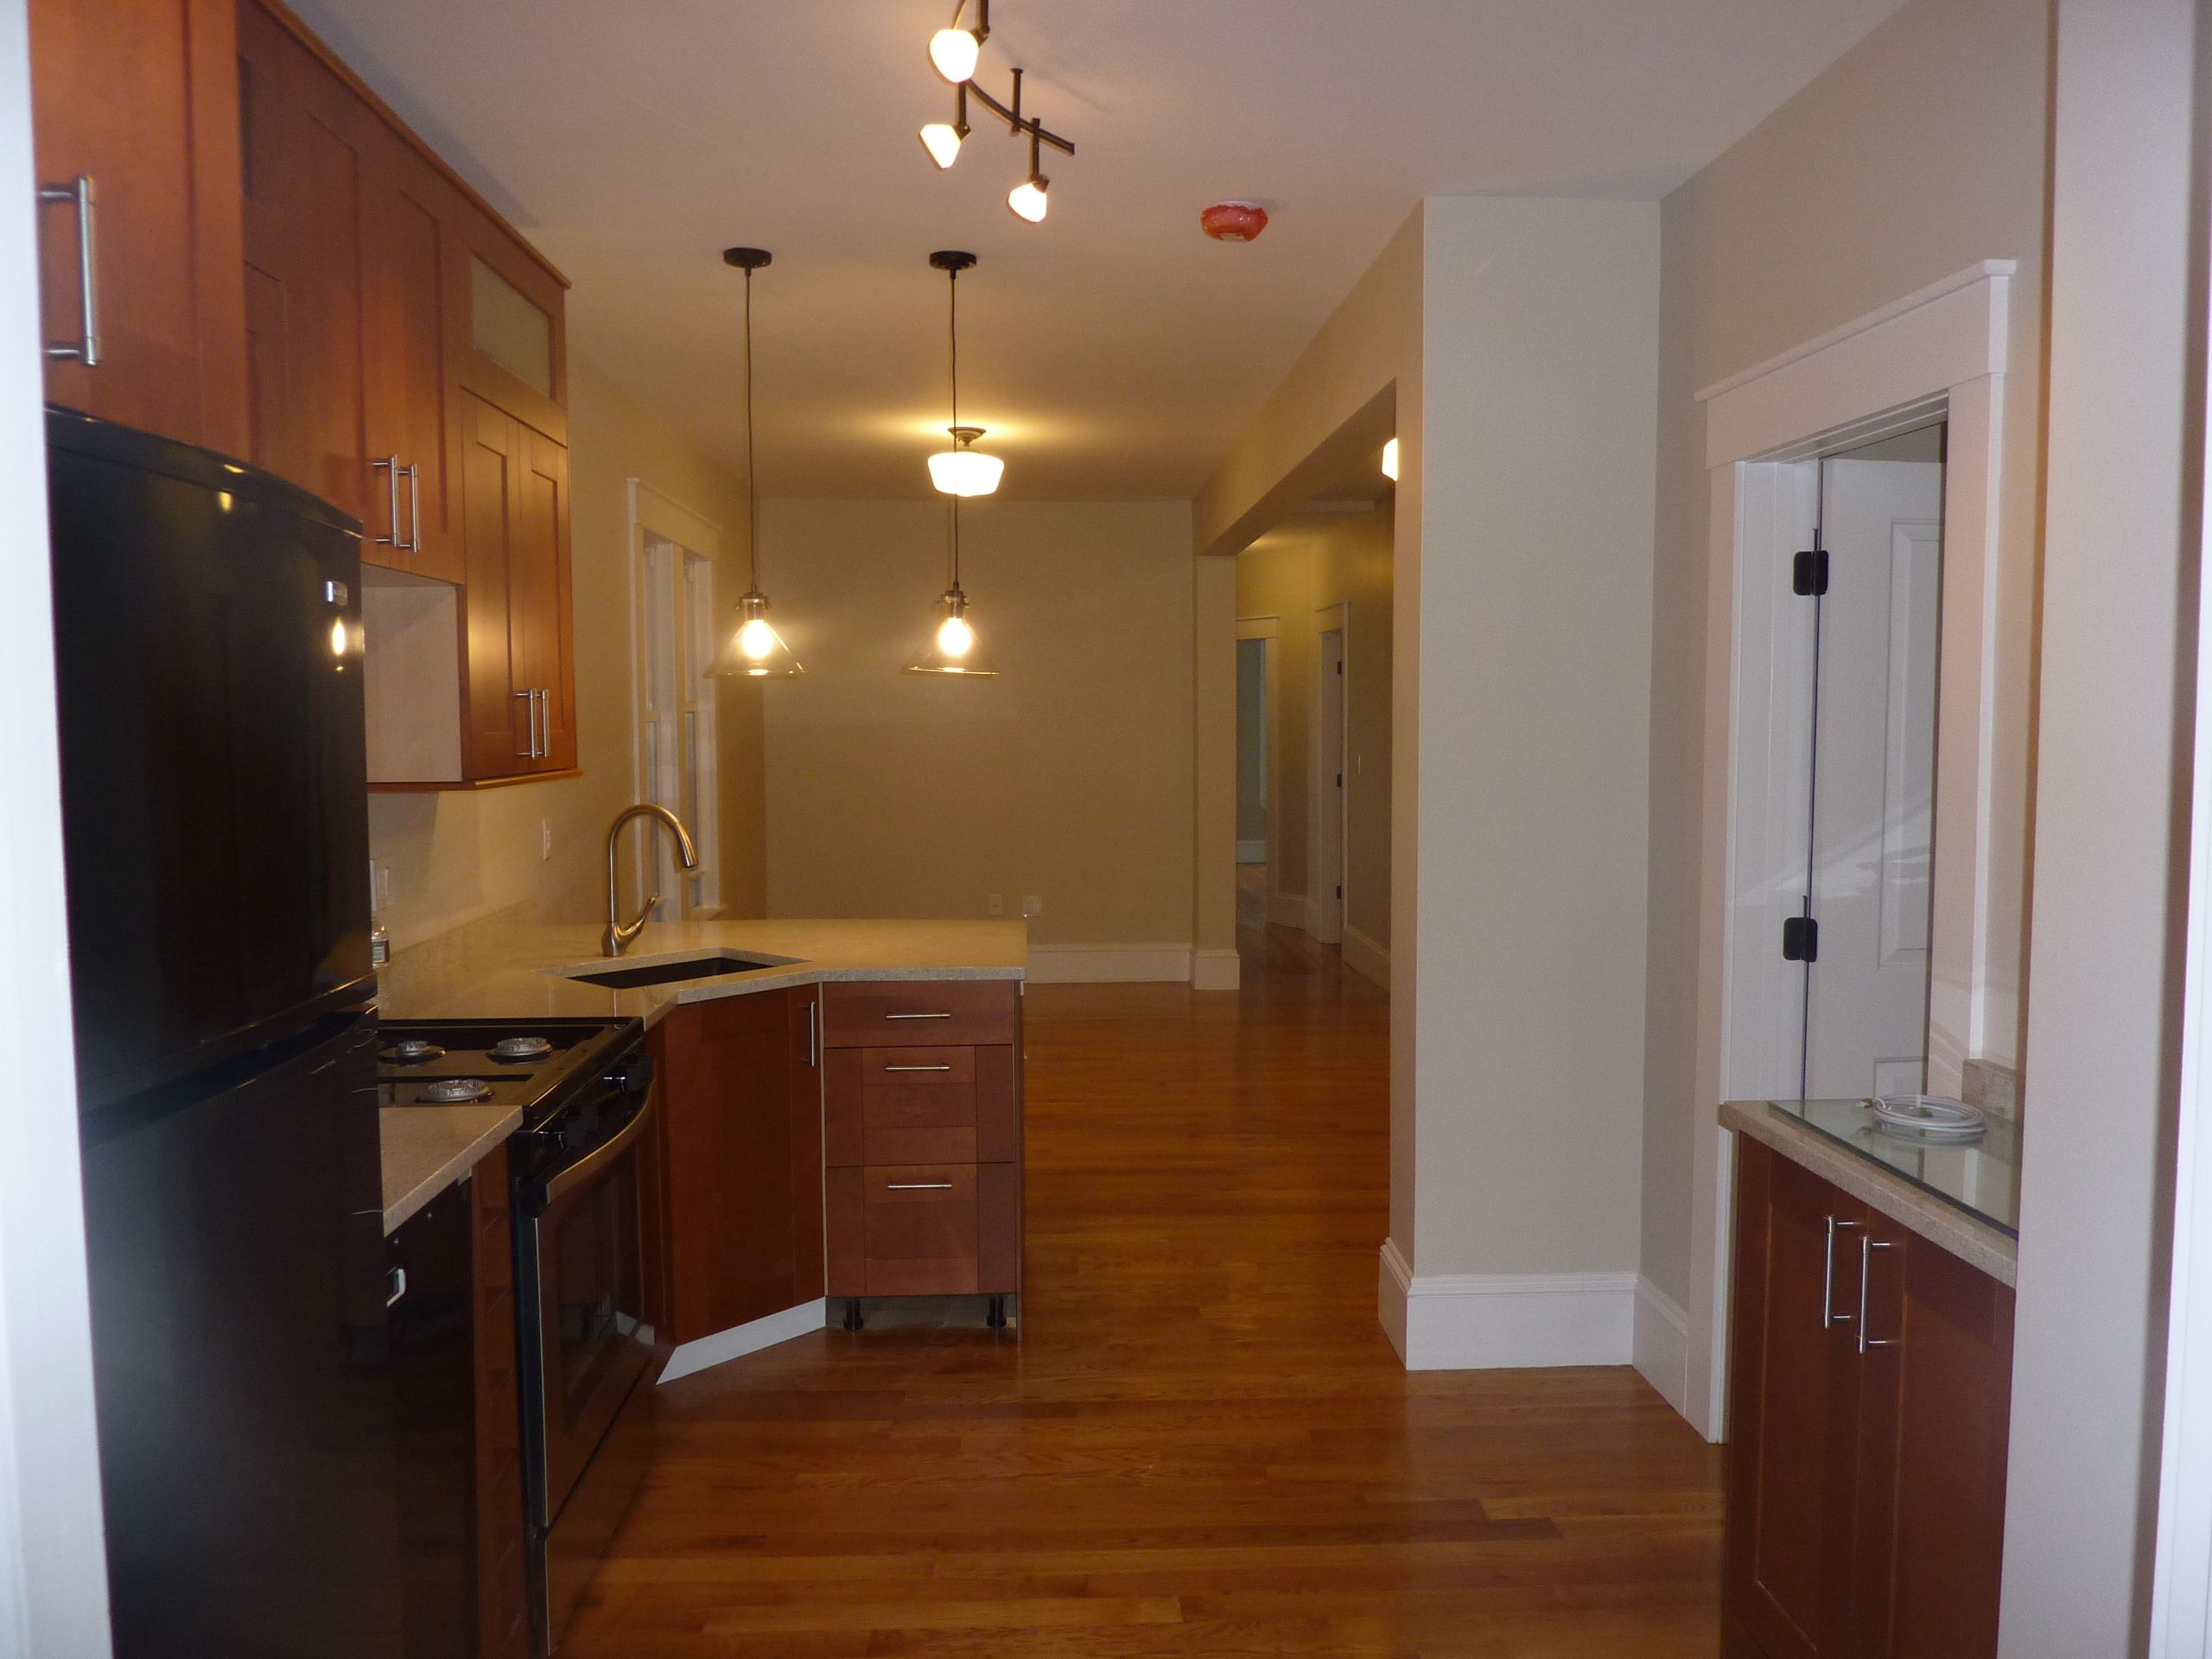 Photos of apartment on Princeton St.,Boston MA 02128